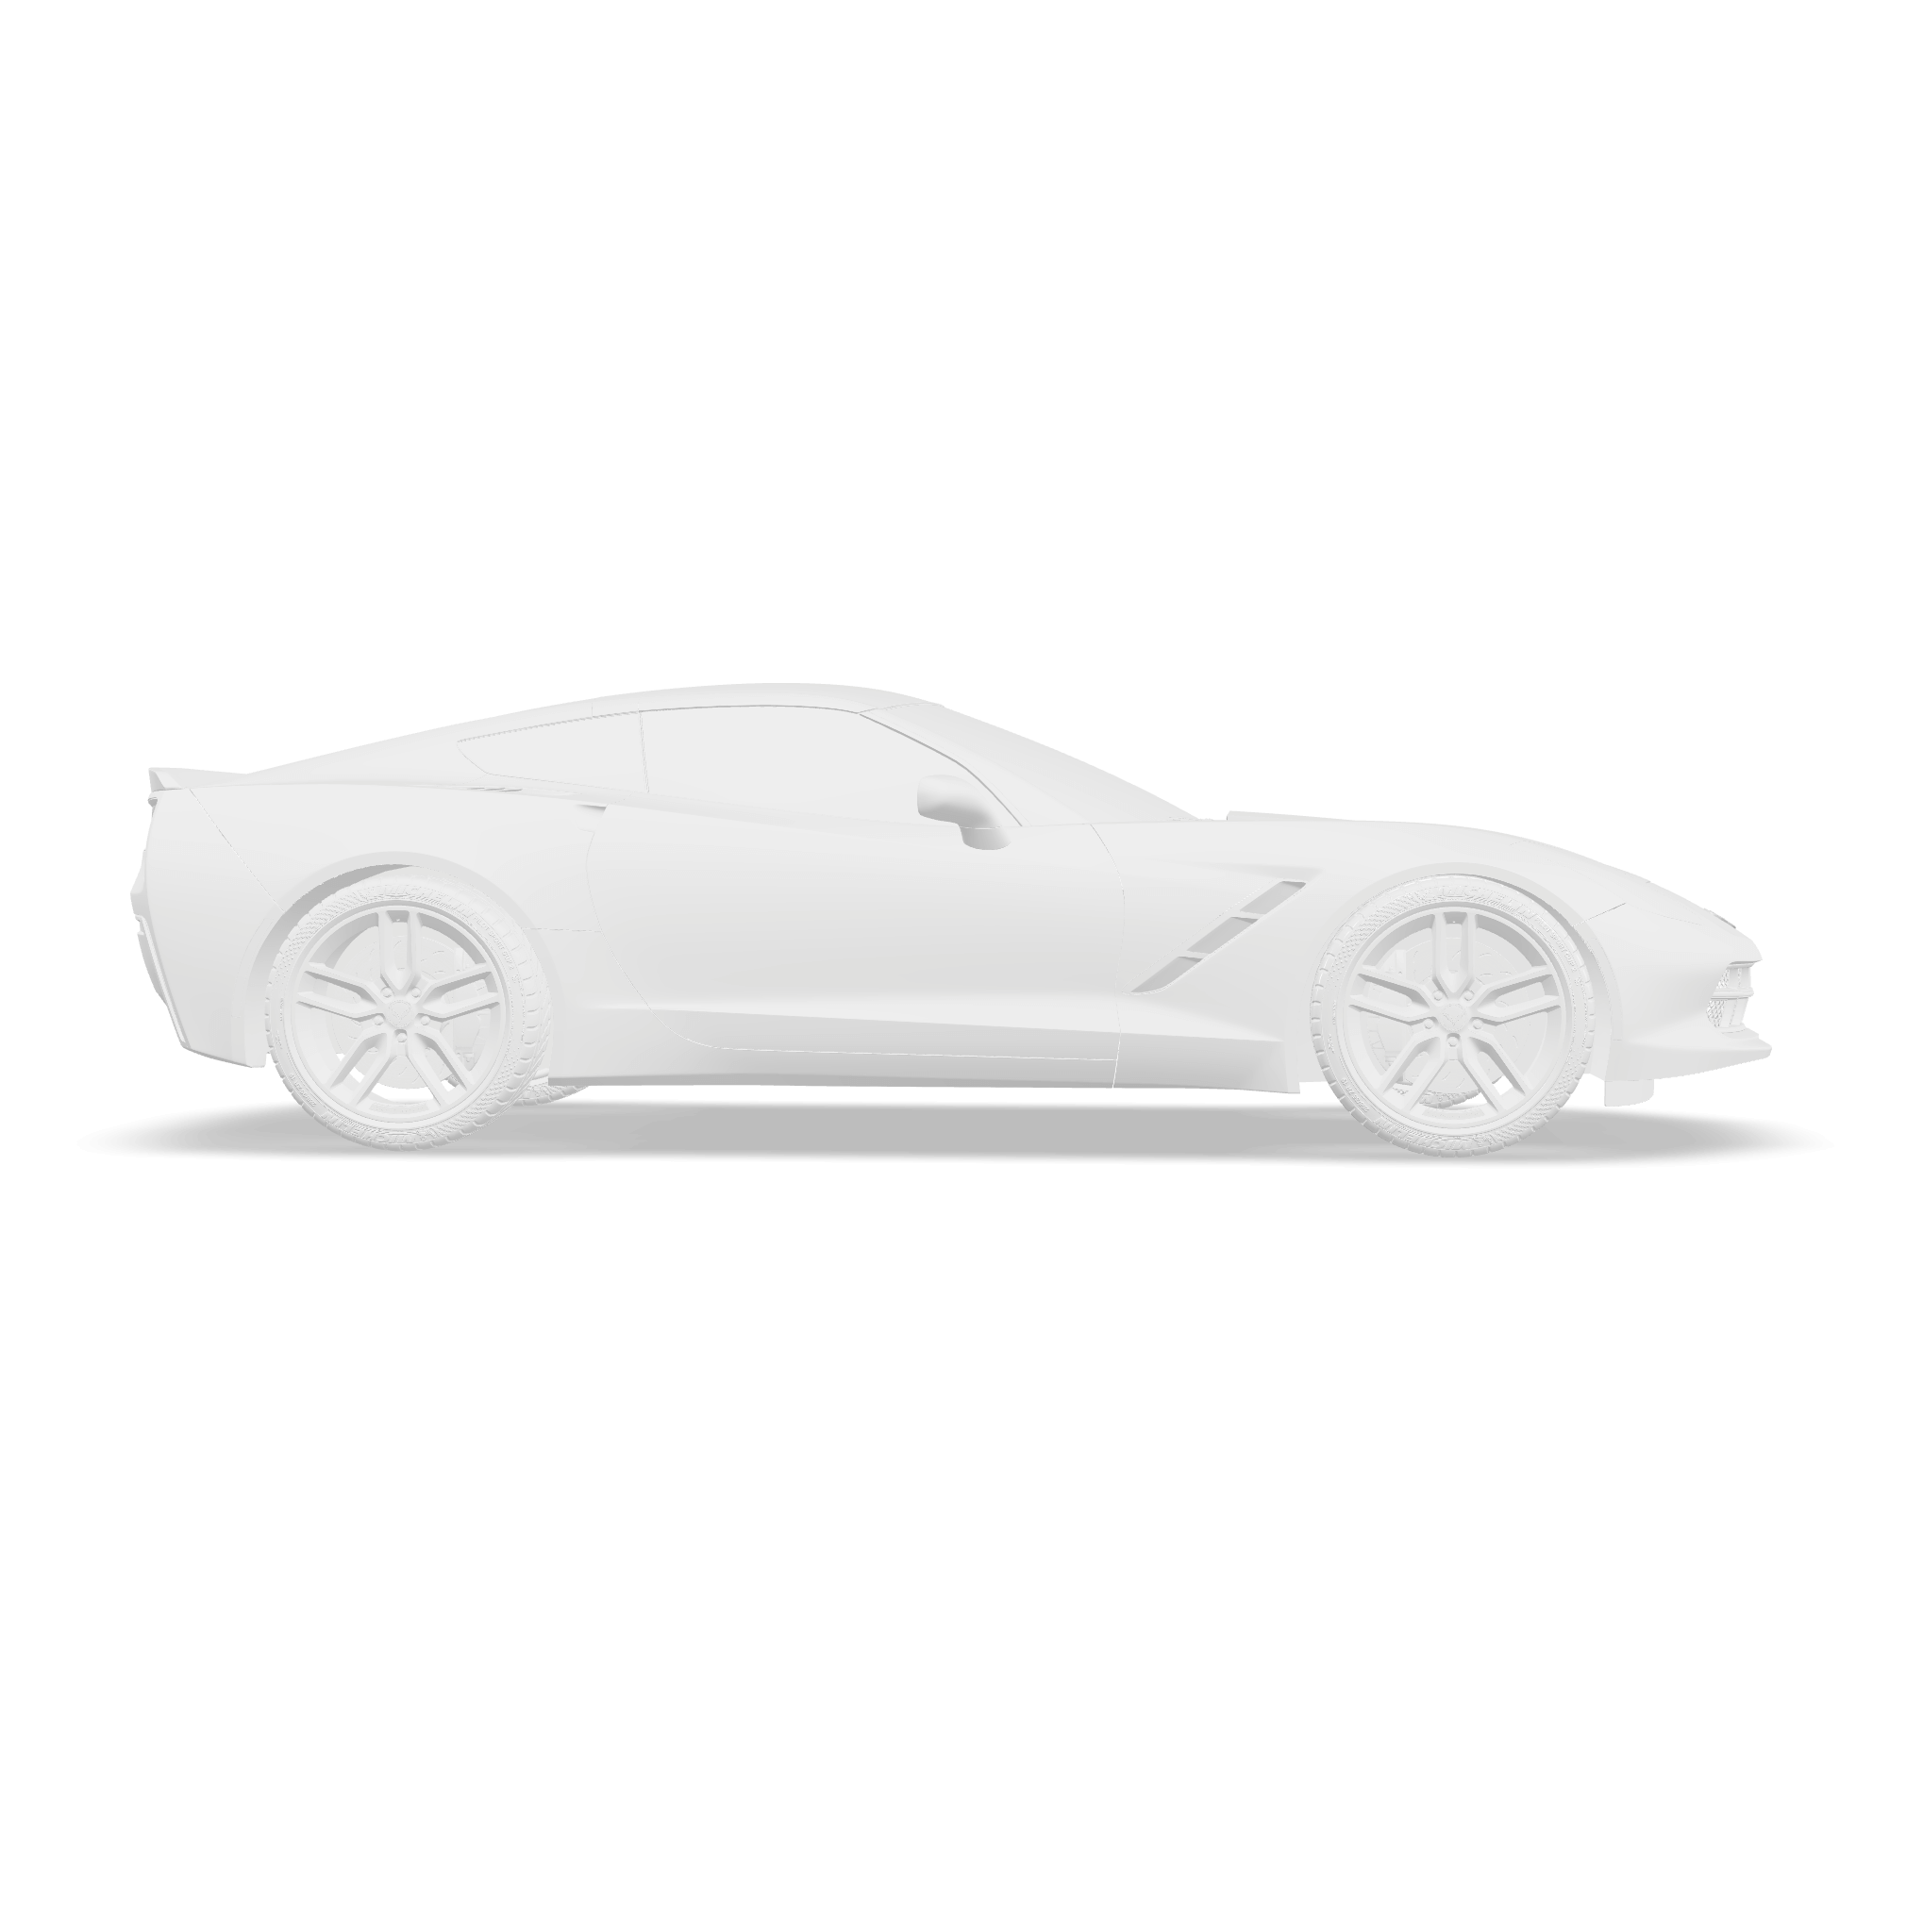 Side 3D render of the Corvette